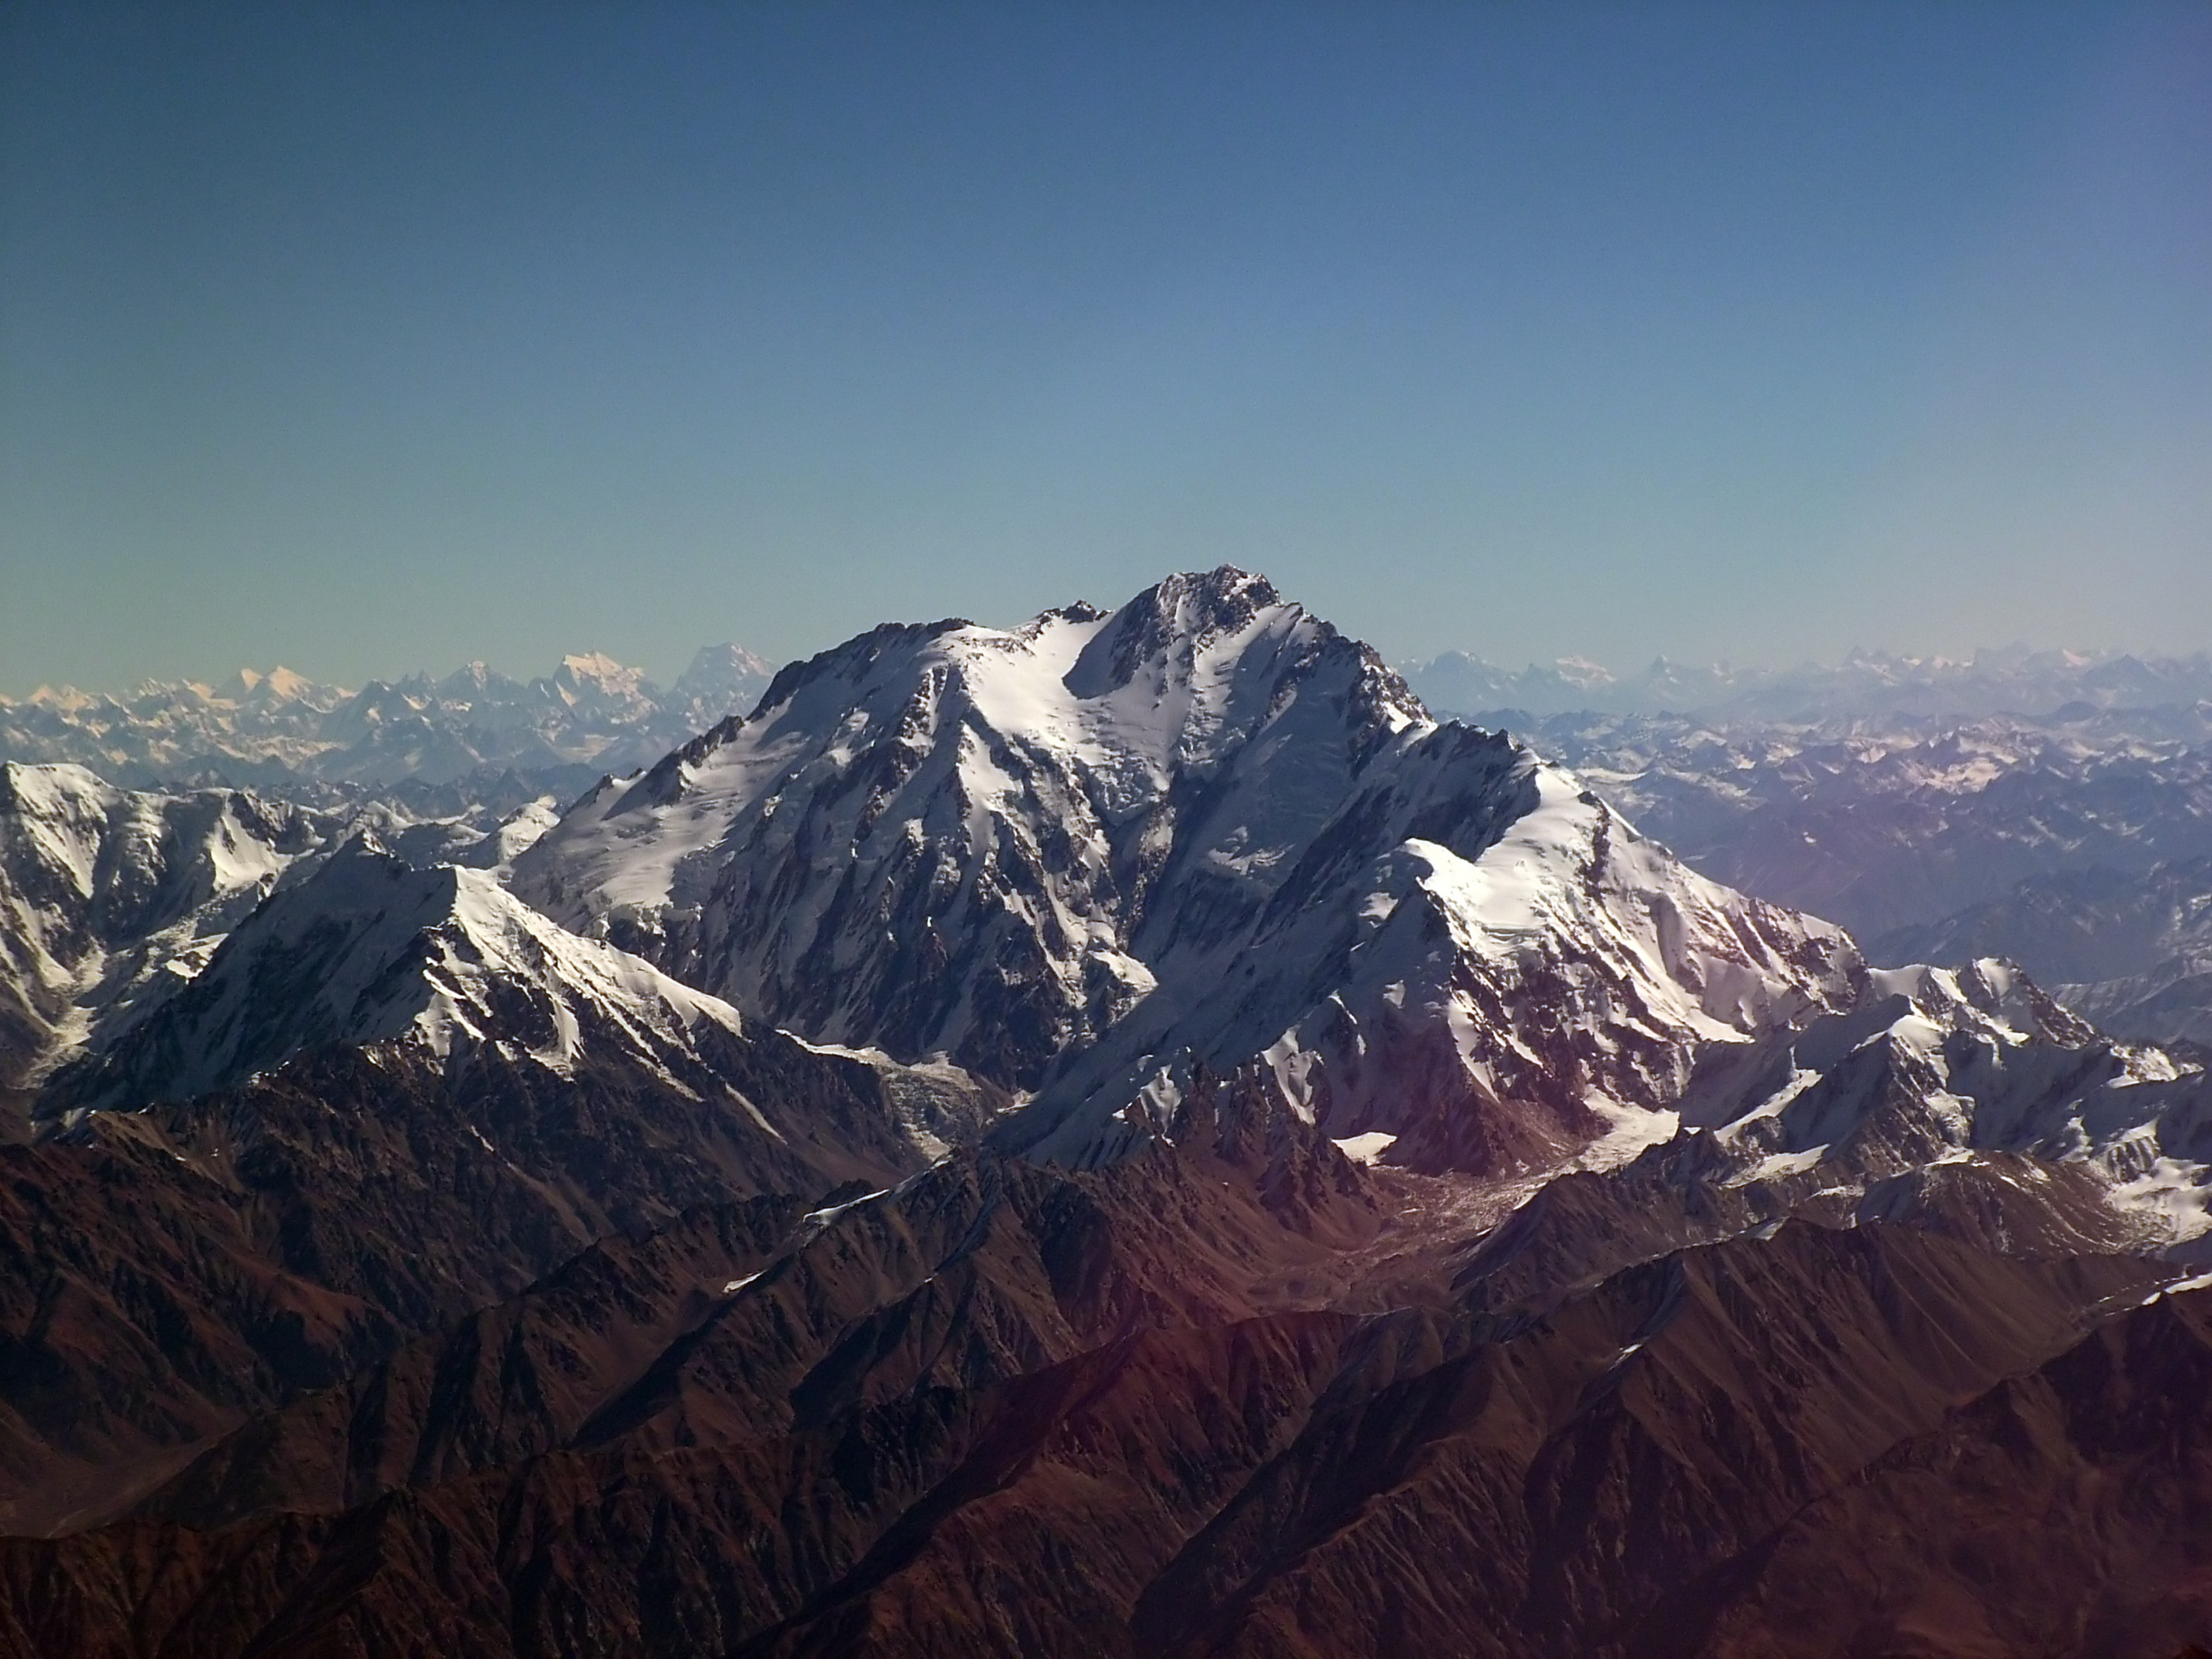 Нанга Парбат (Nanga Parbat, 8126 м) - девятый по высоте восьмитысячник мира